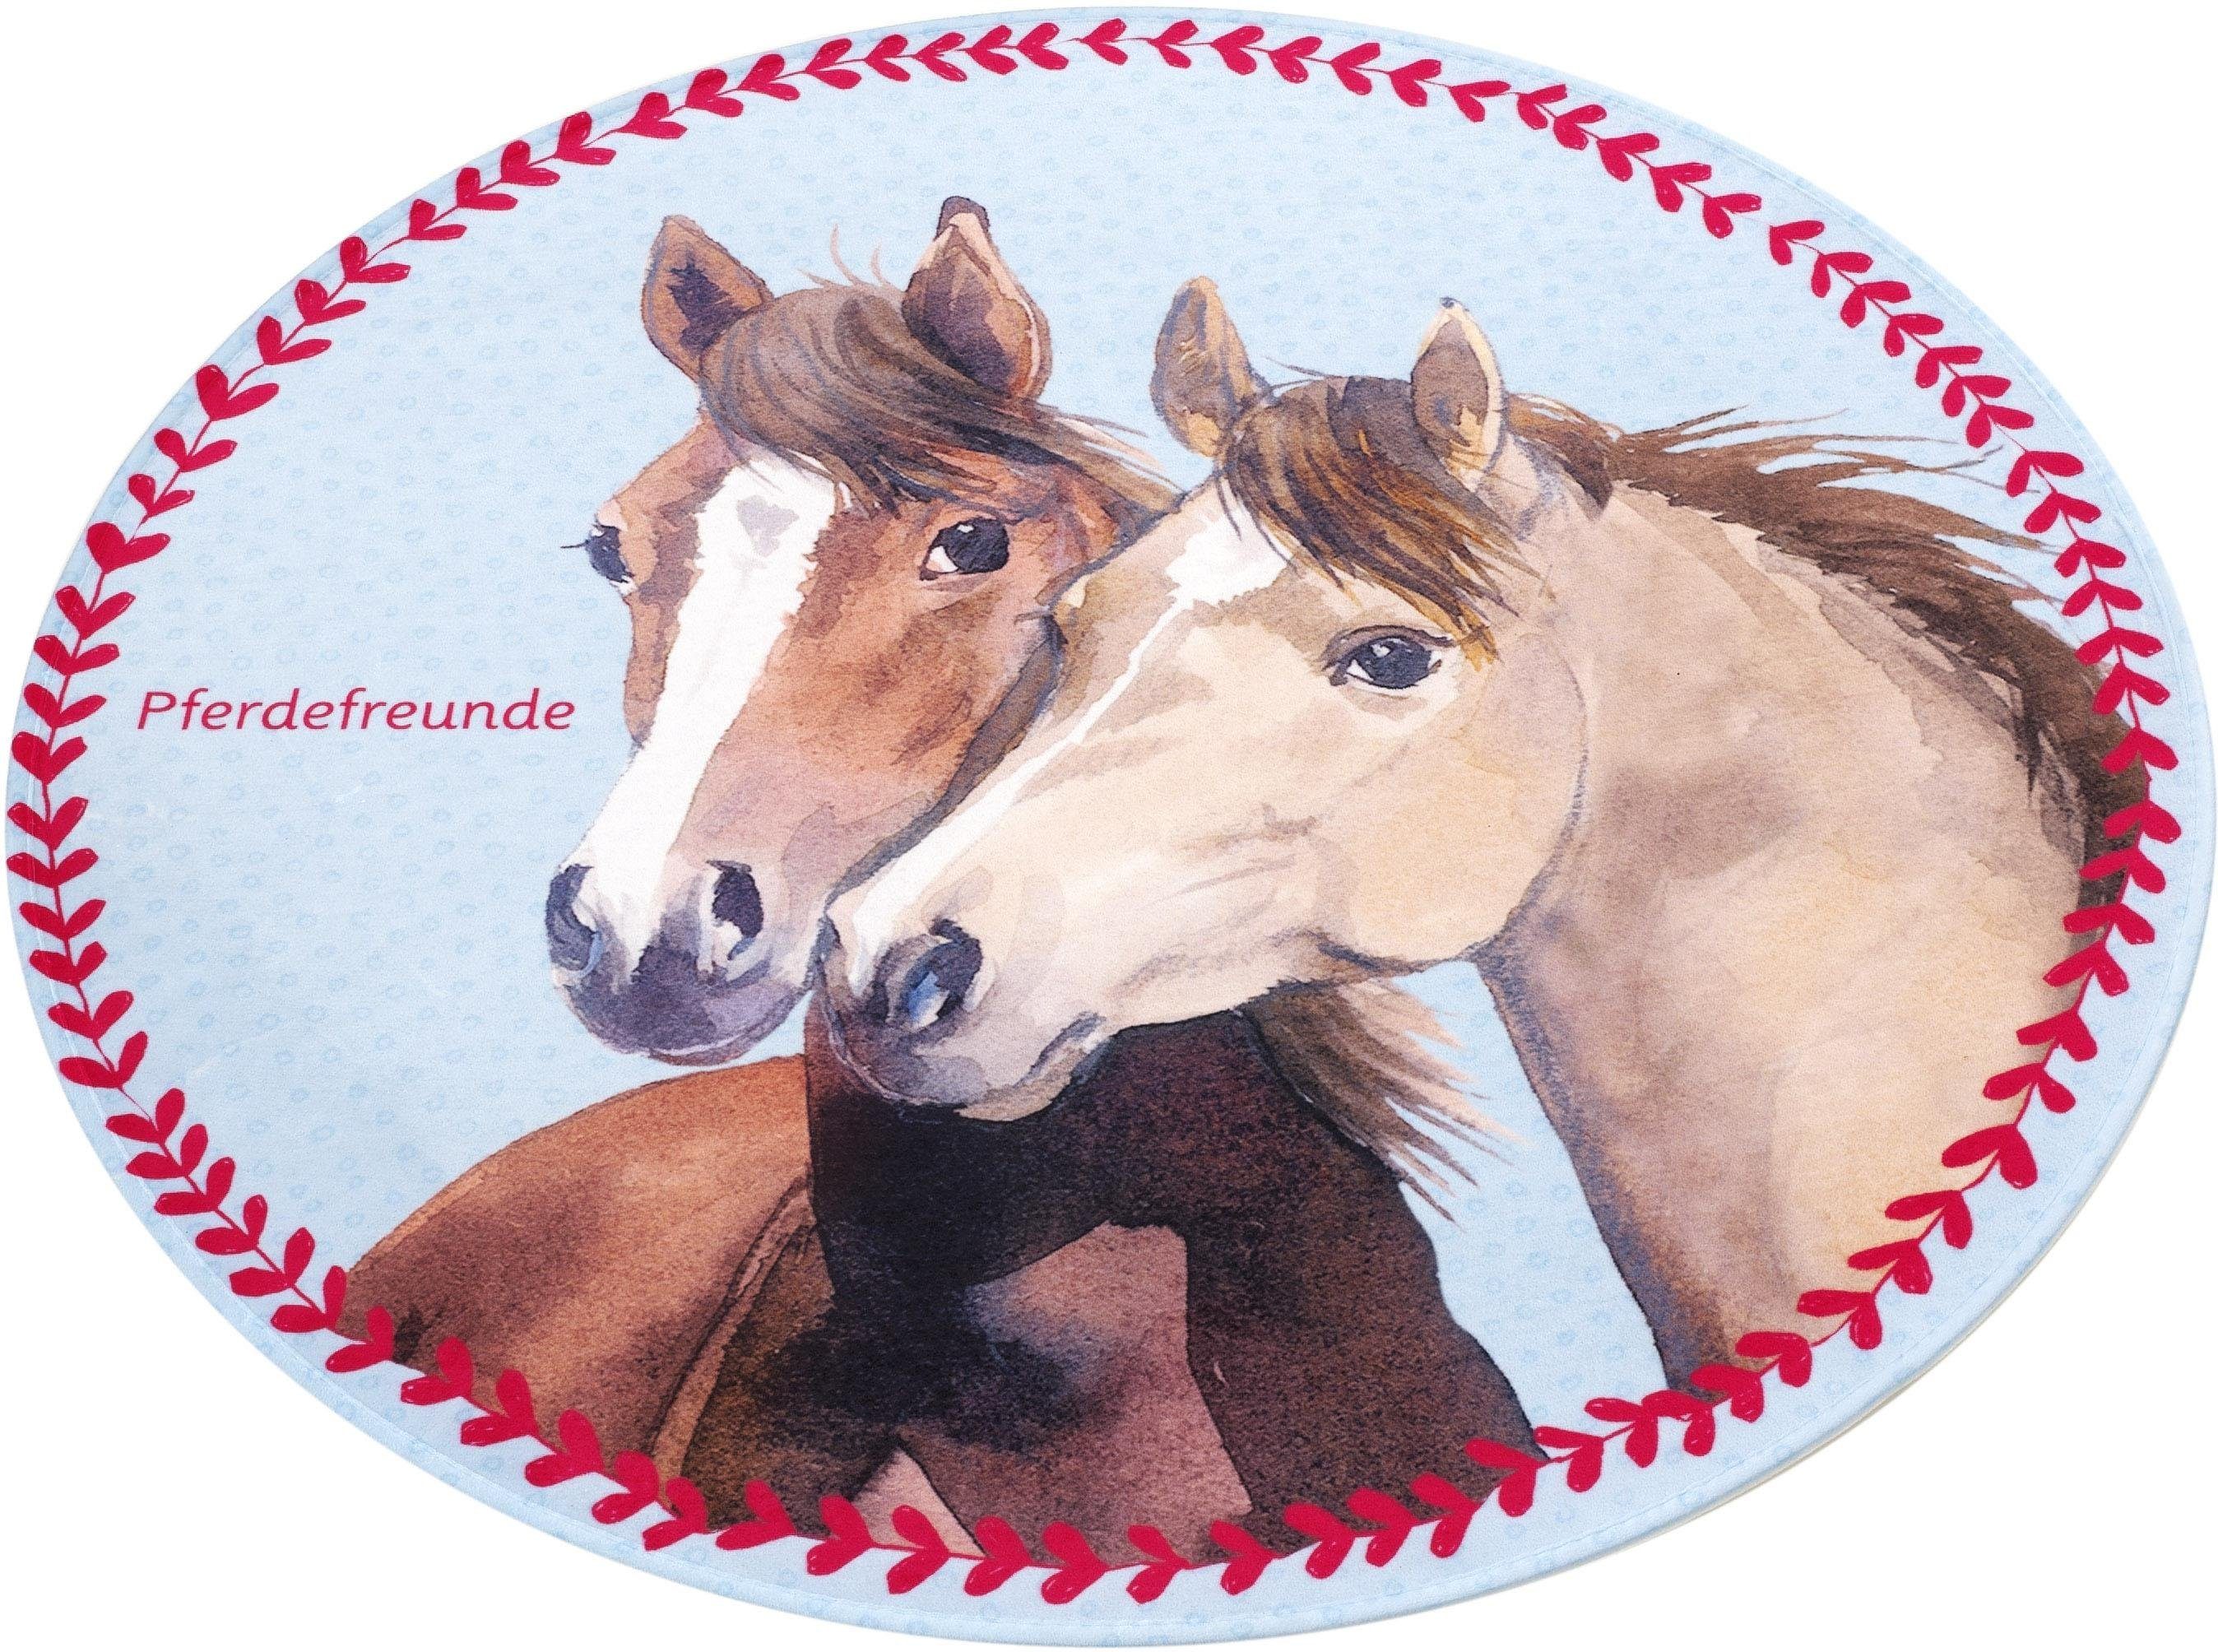 pferdefreunde kindervloerkleed pf-513 motief paarden, stof print, zachte microvezel, kinderkamer bruin